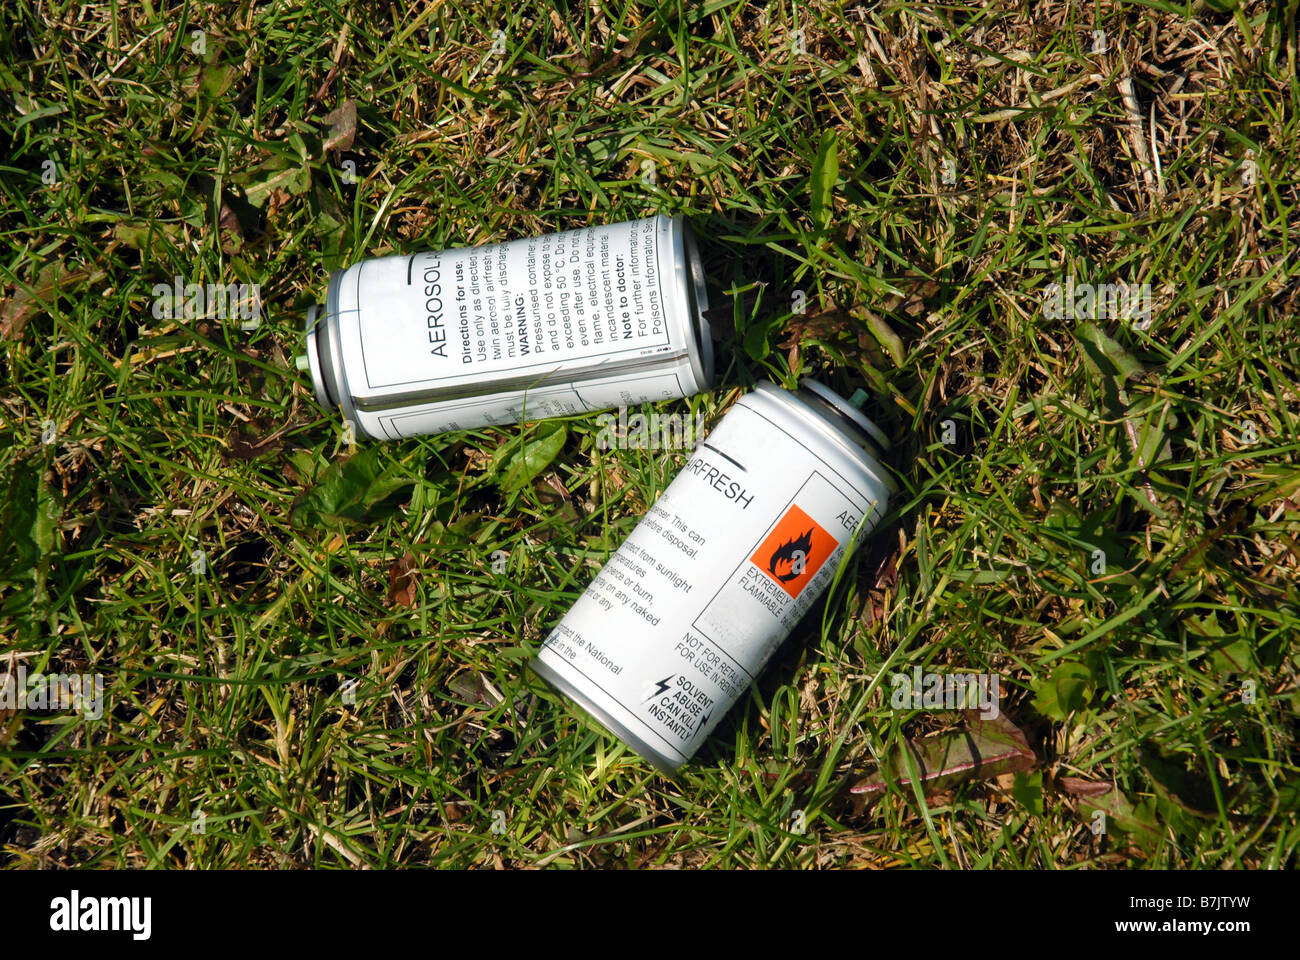 Leere Spraydosen in einem öffentlichen Park. Schlägt Lösungsmittel Missbrauch von Drogenabhängigen ein großes Problem in Europa Stockfoto